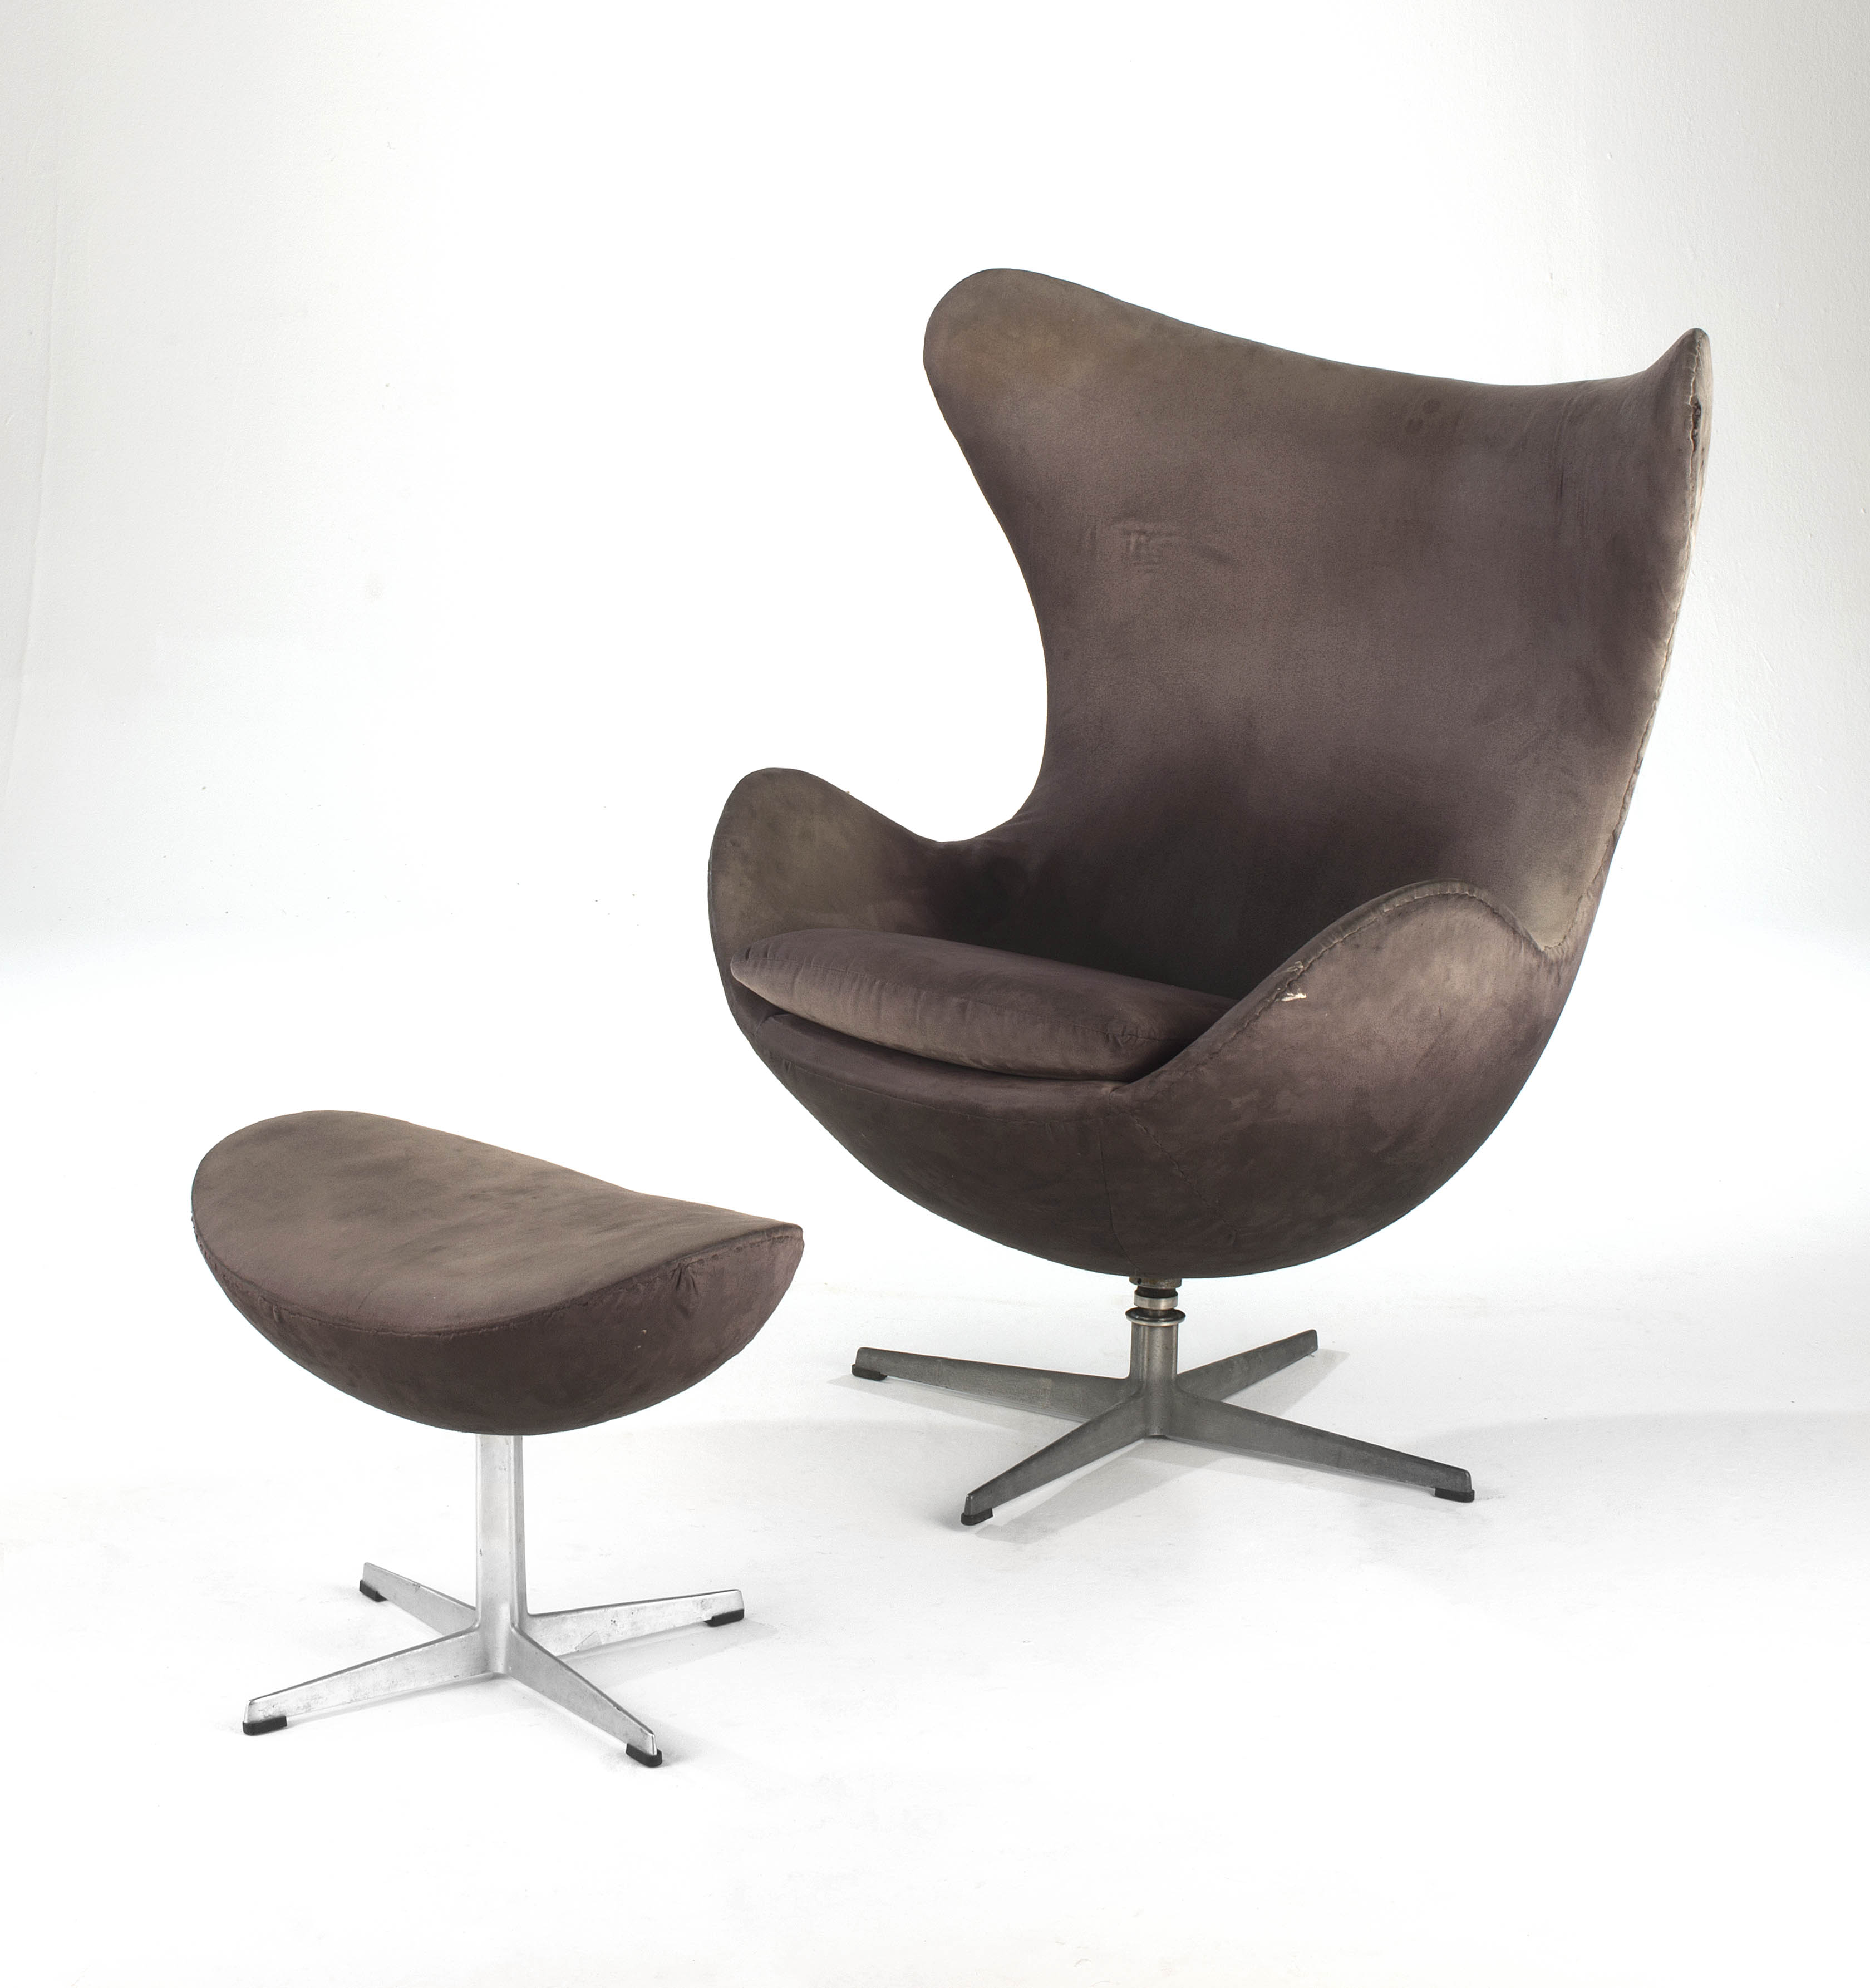 An Arne Jacobsen Egg Chair and Ottoman for Fritz Hansen